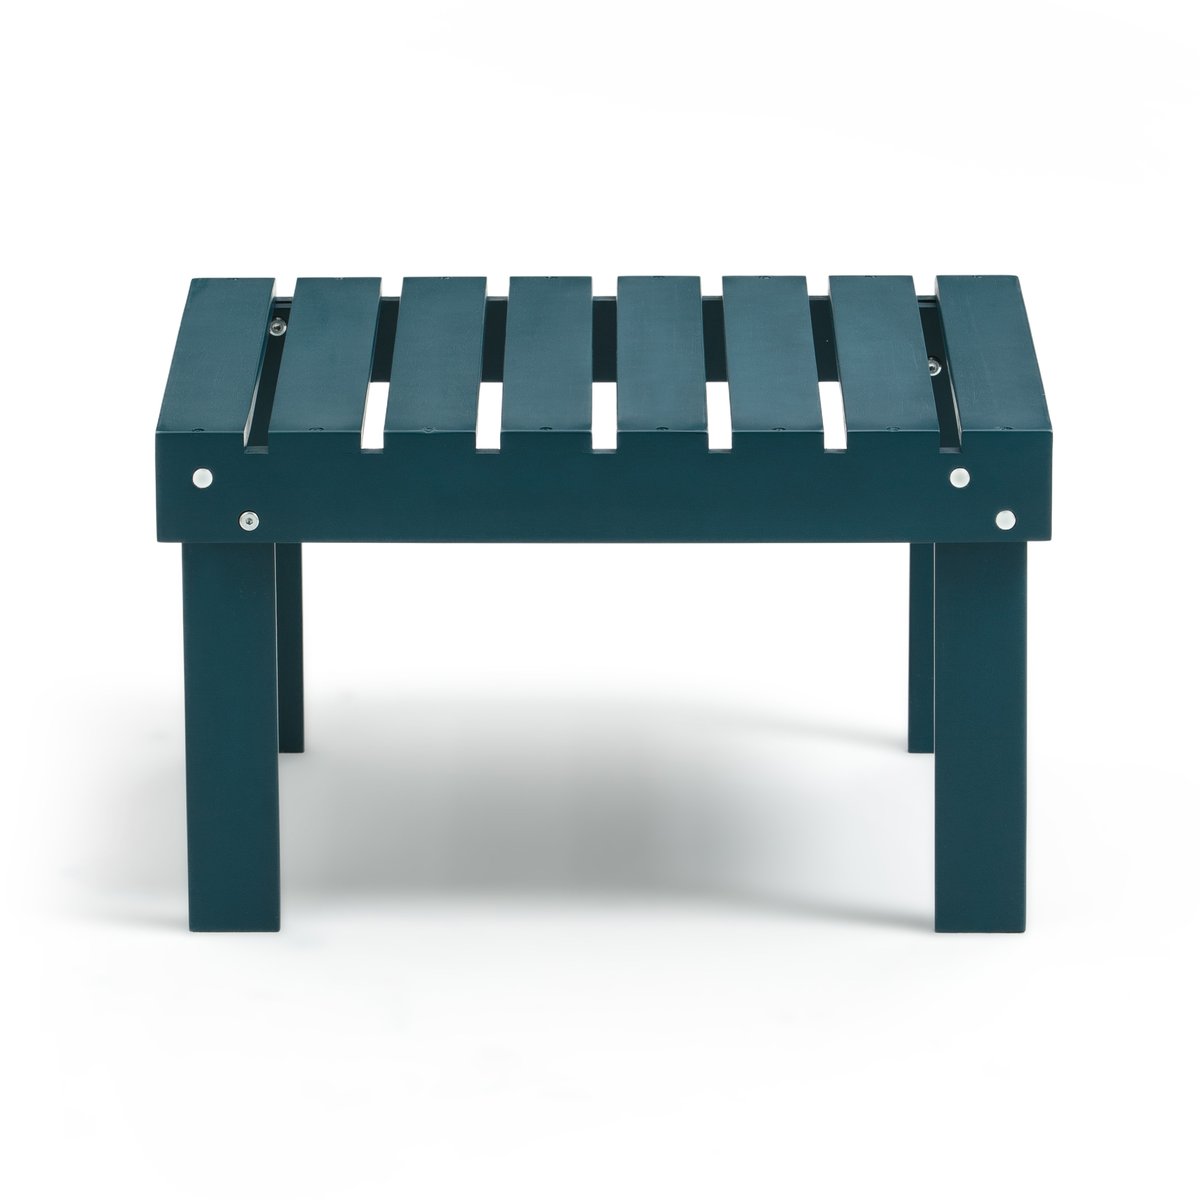 Подставка La Redoute Для ног низкий столик в стиле адирондак Zeda единый размер синий - фото 2